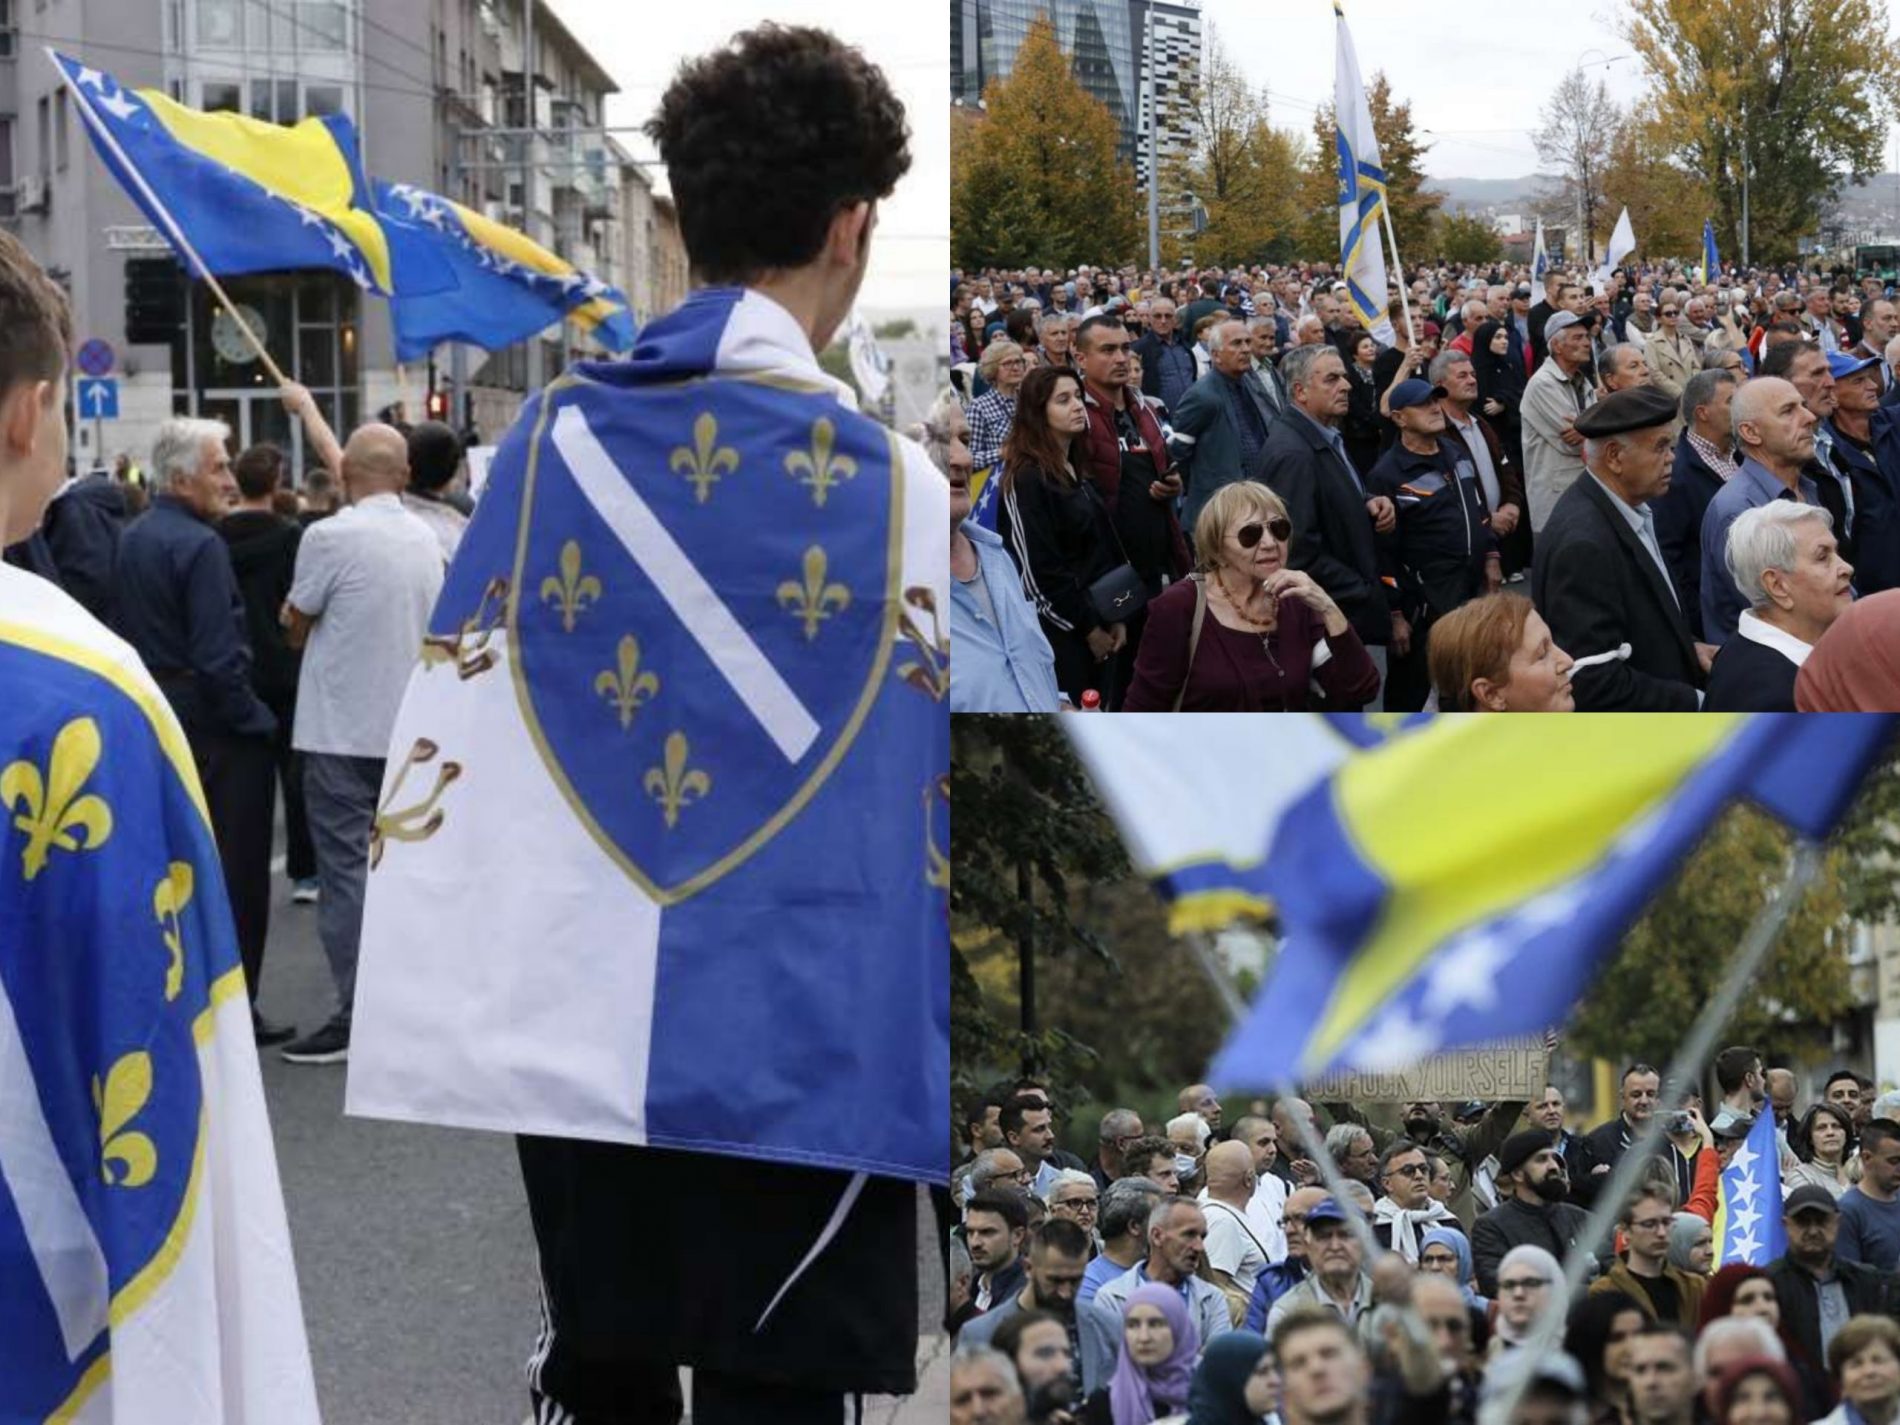 Poruka iz glavnog grada – nećemo aparthejd, hoćemo suverenu Bosnu!